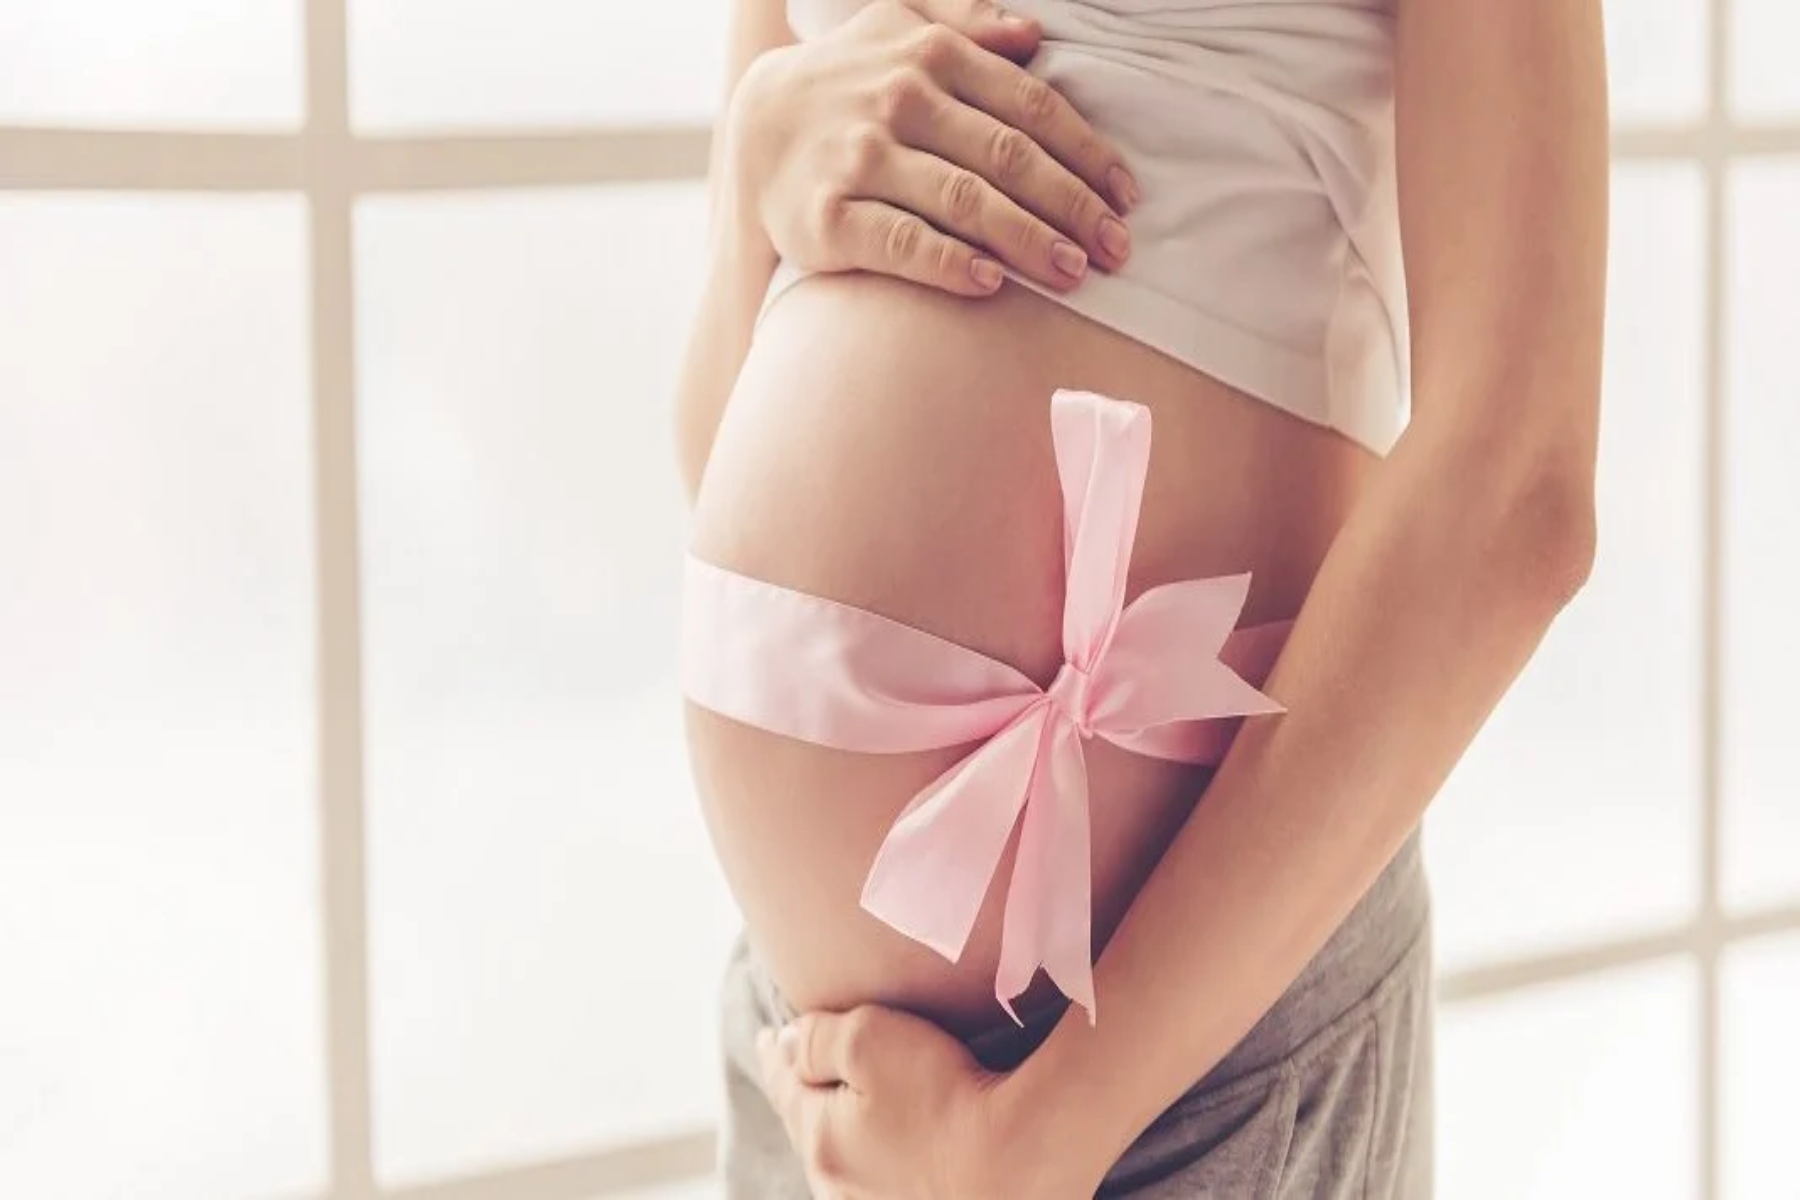 Γυναικεία γονιμότητα: Η θεραπεία για καρκίνο του μαστού την επηρεάζει;